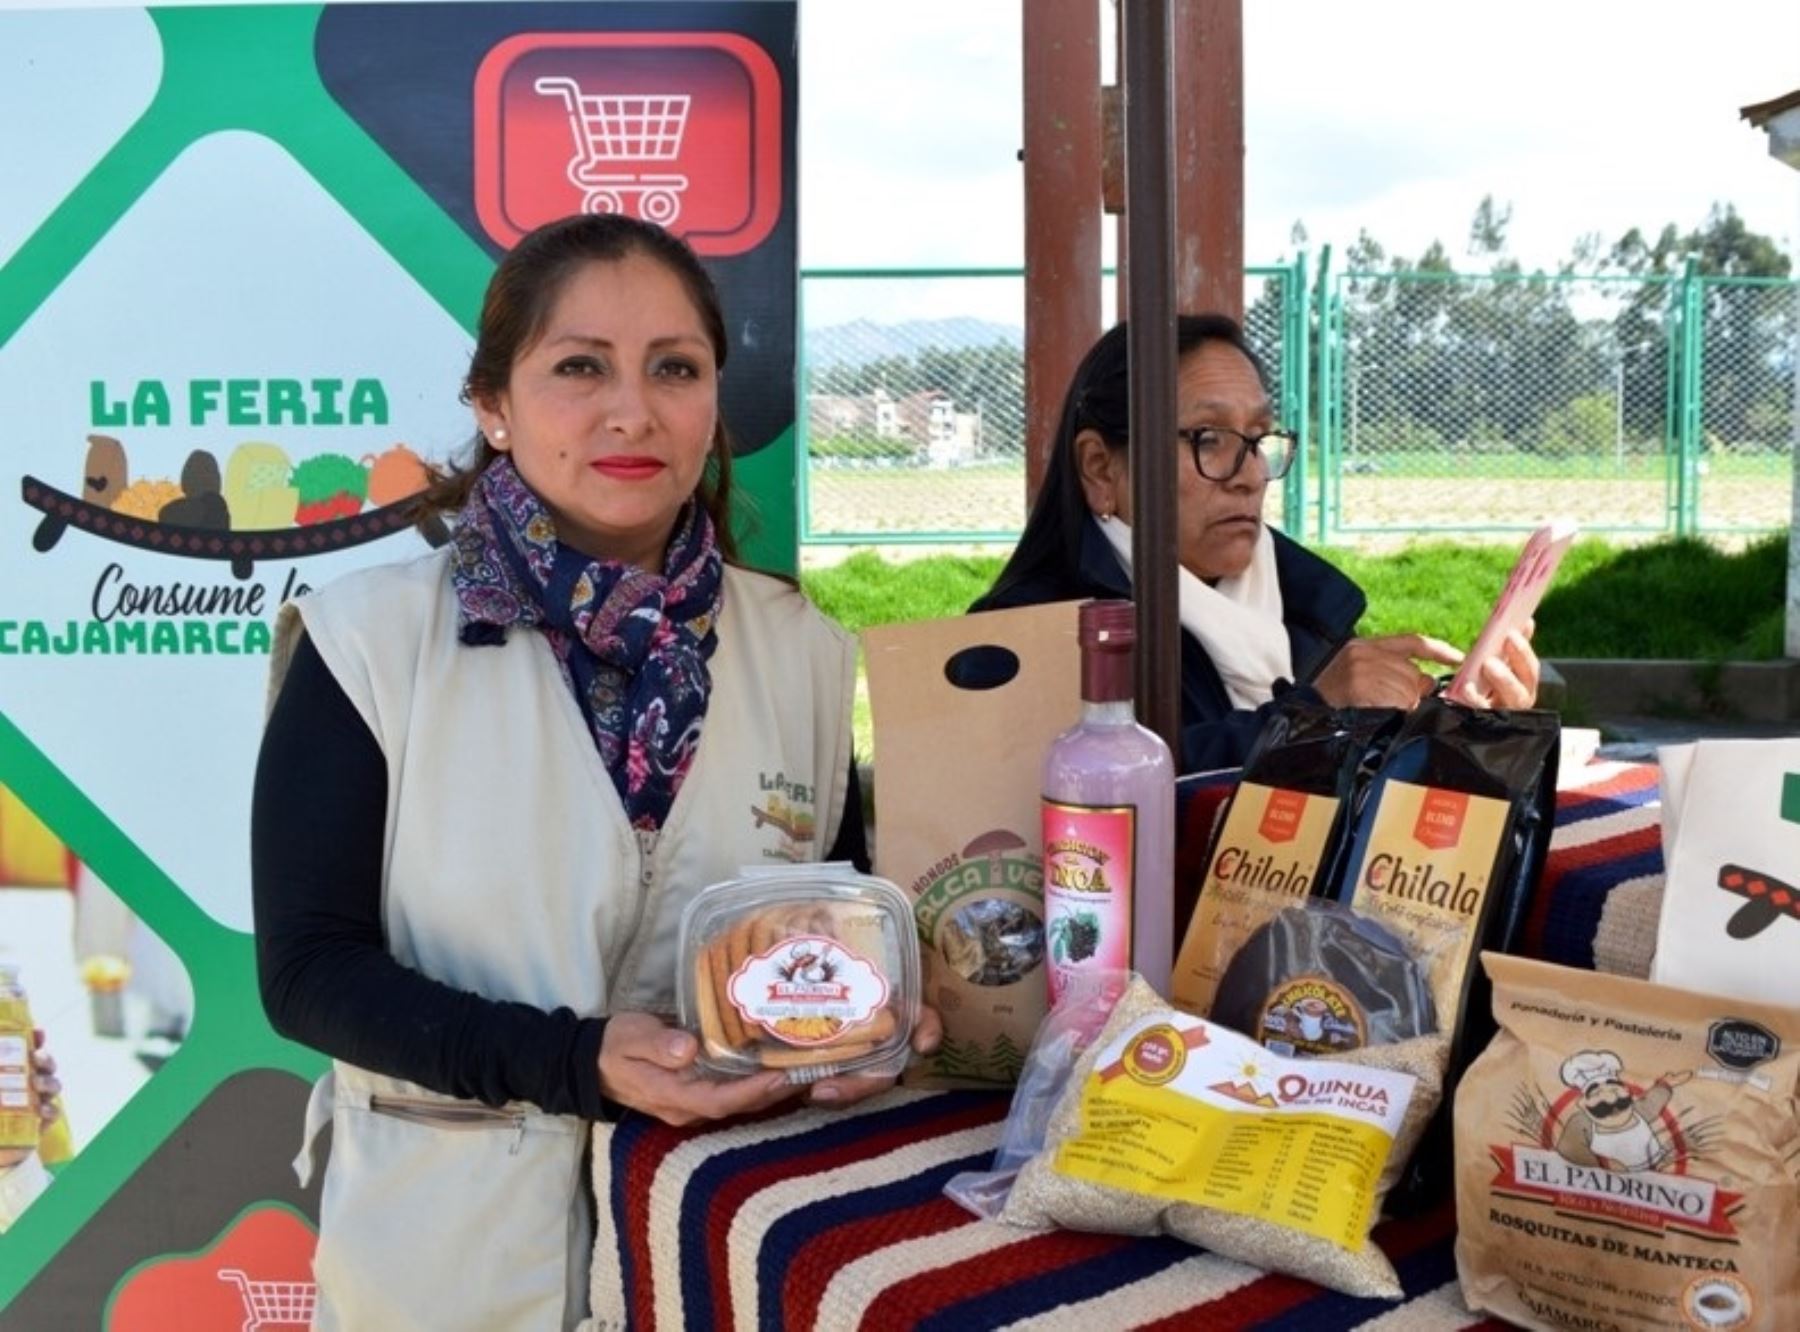 Feria "Consume lo que Cajamarca produce" vuelve este sábado 29 y domingo 30 de abril. Foto: Eduard Lozano.